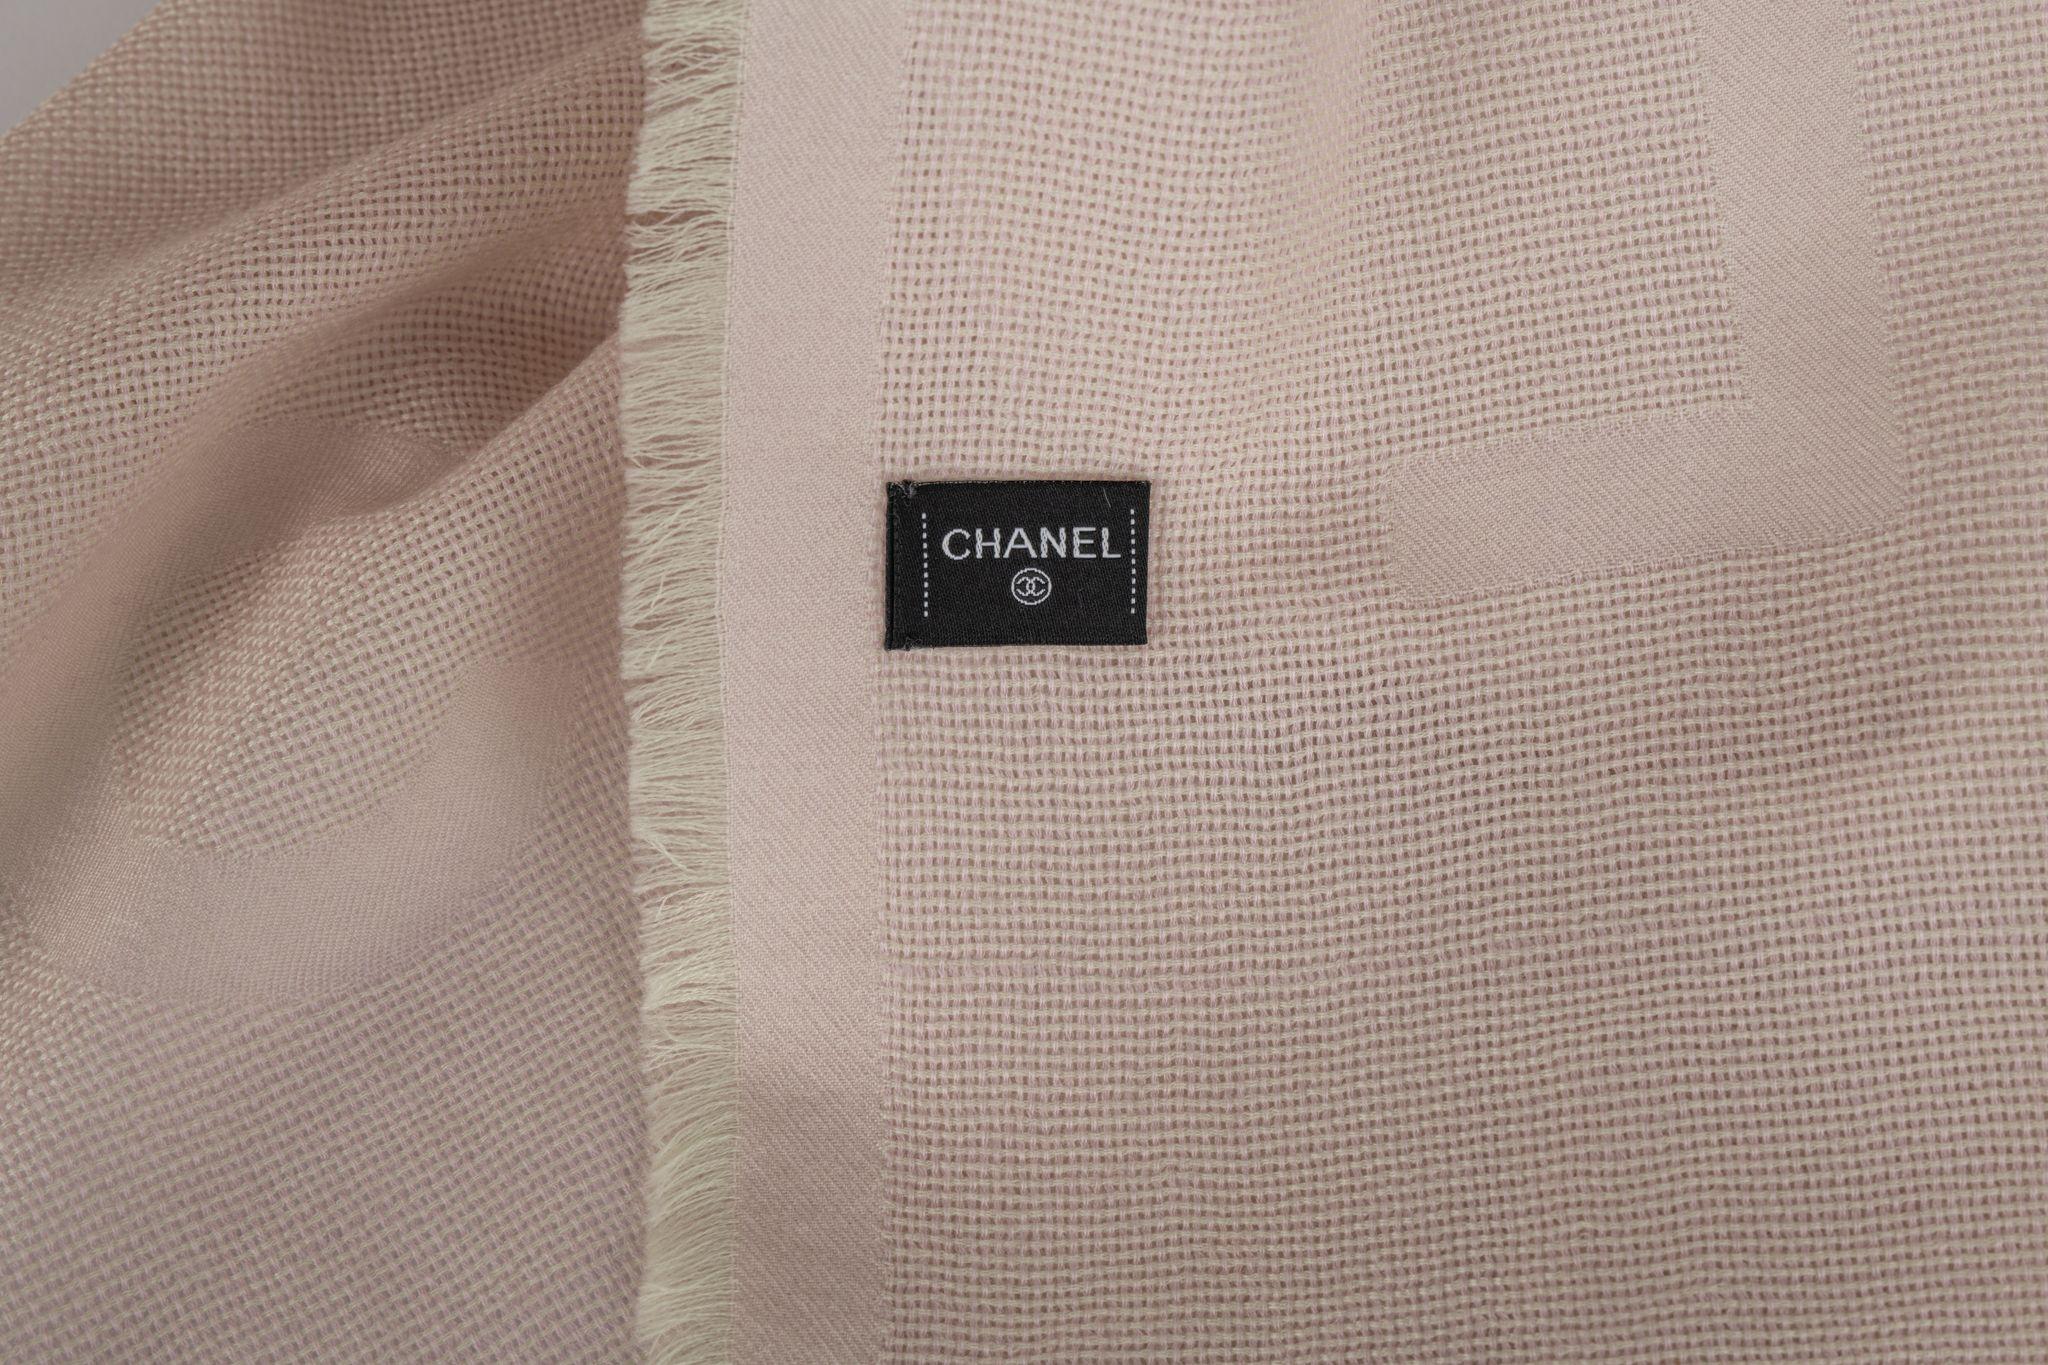 Chanel Kaschmirschal in Puderrosa. Das Muster besteht aus einem großen CC-Logo und dem Schriftzug Chanel auf dem Schal. Der Artikel ist in neuem Zustand.